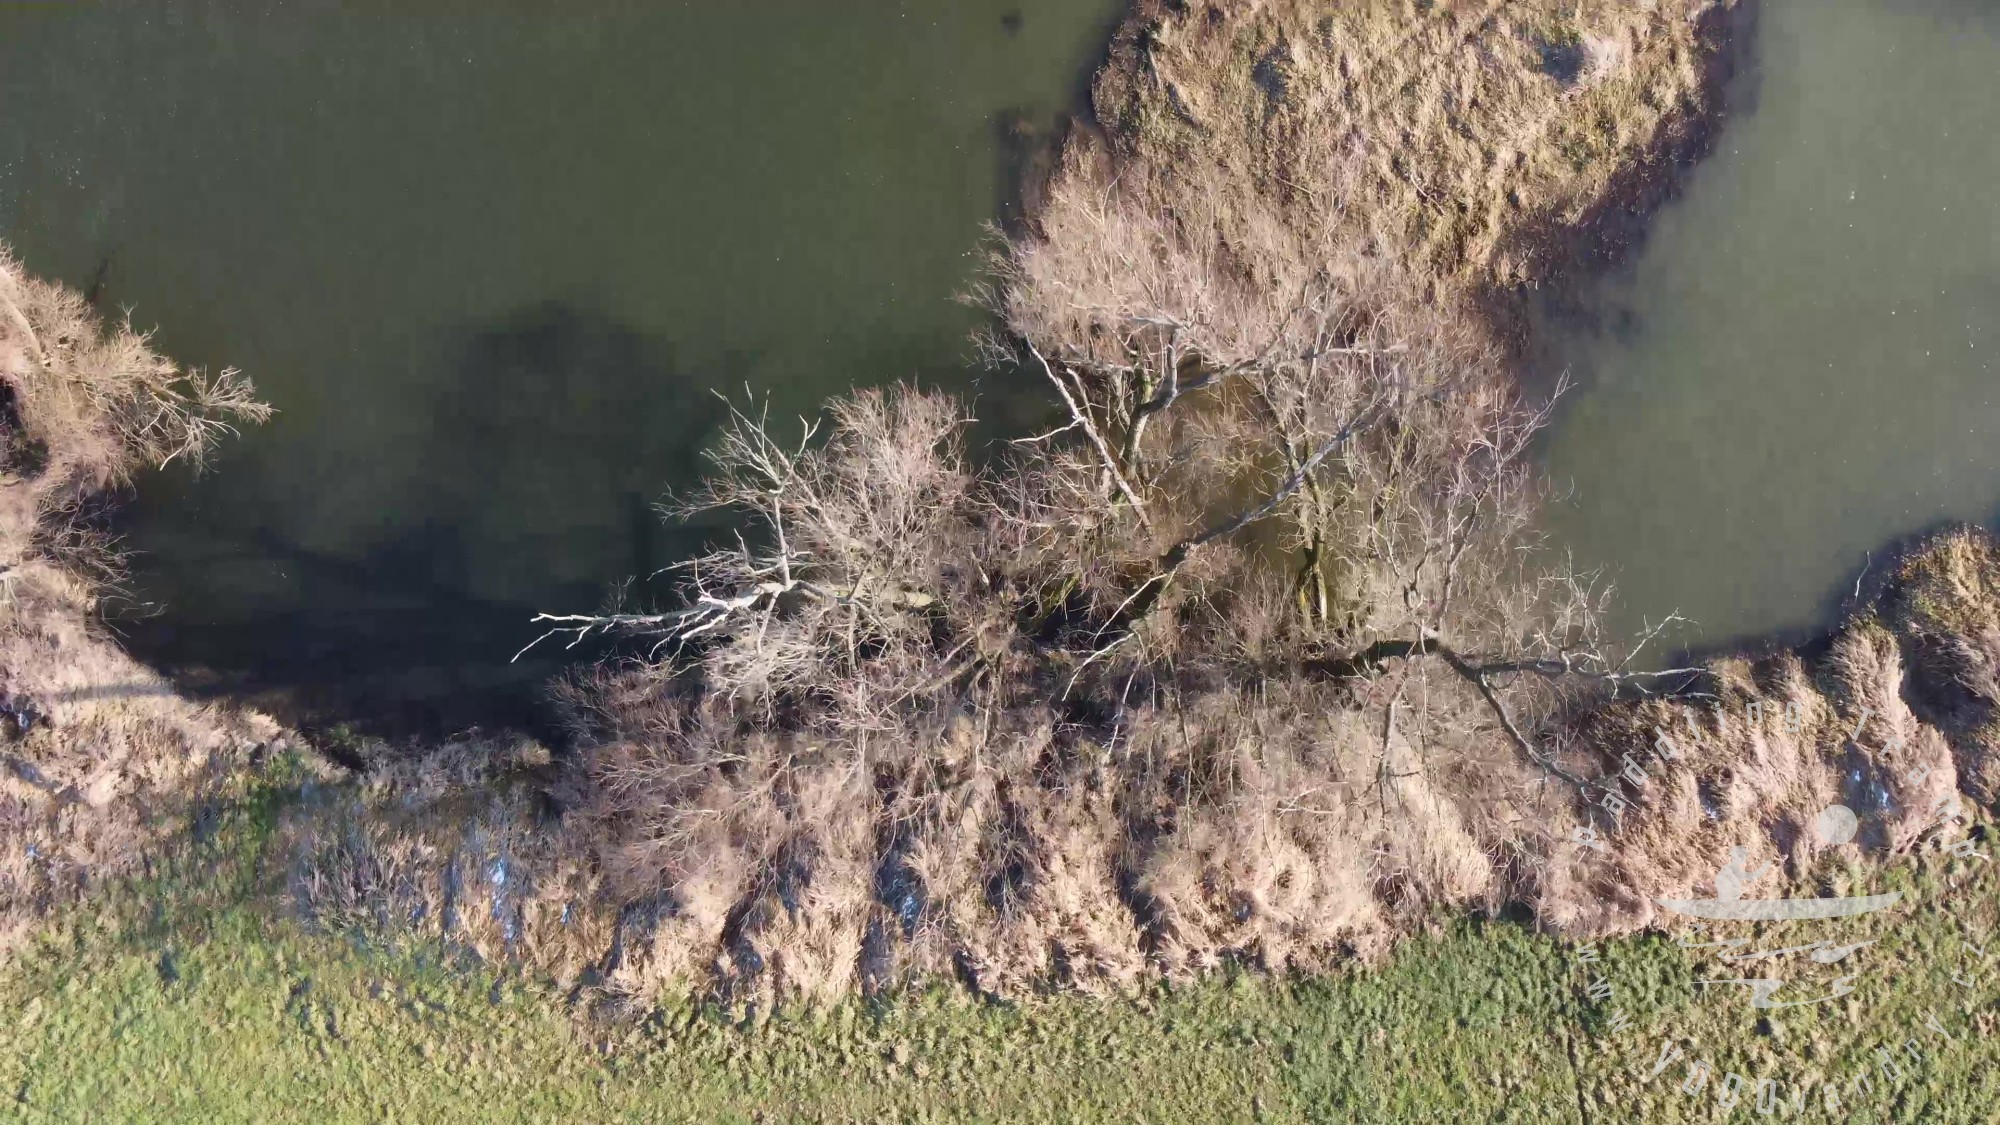 Přelet dronem nad řekou Opavou | První let s DJI mini 2 | Dron 4K